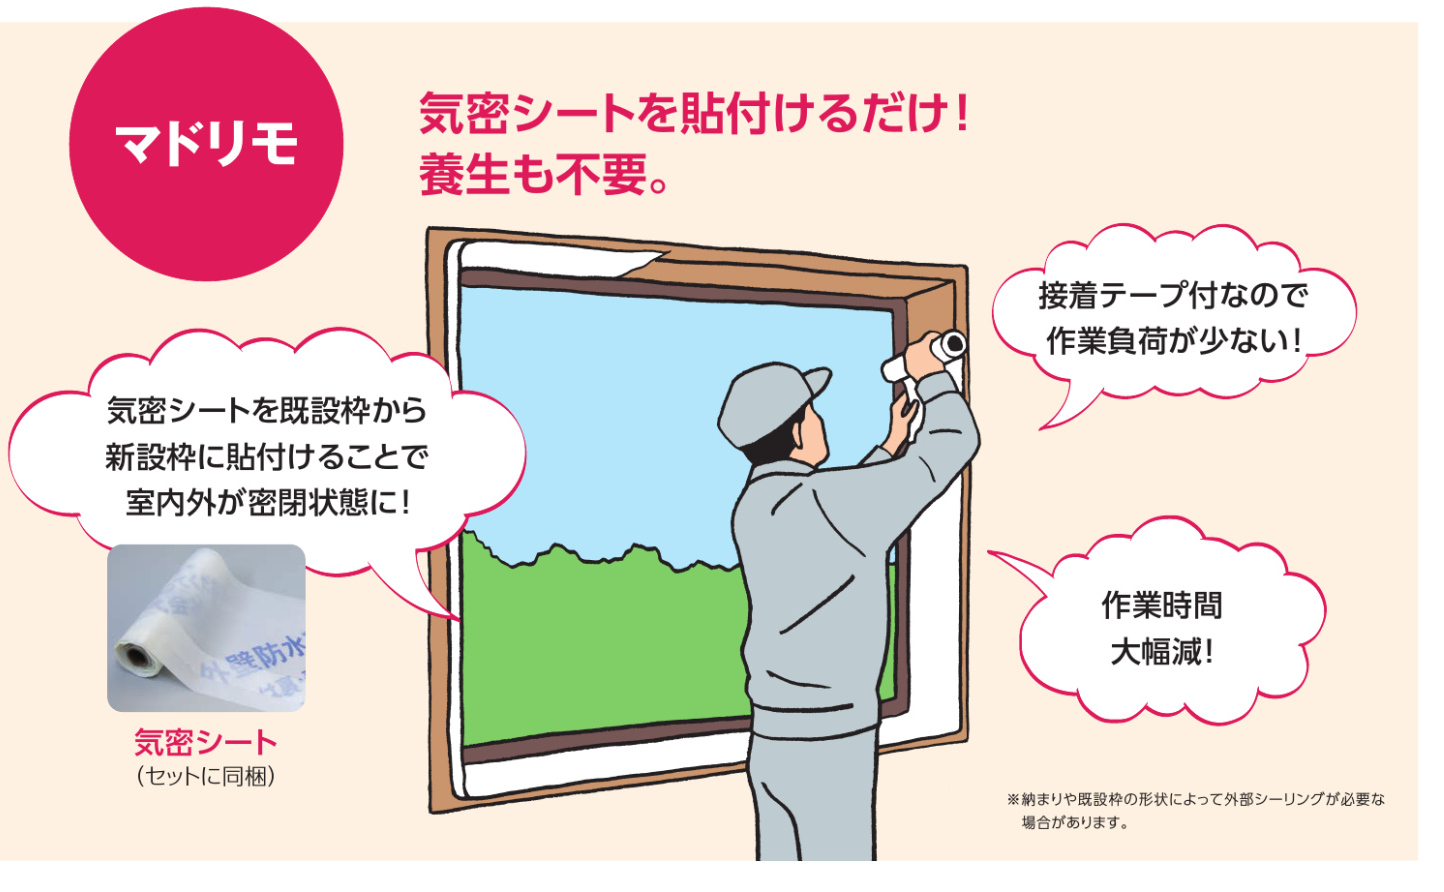 カバー工法での窓交換の特徴